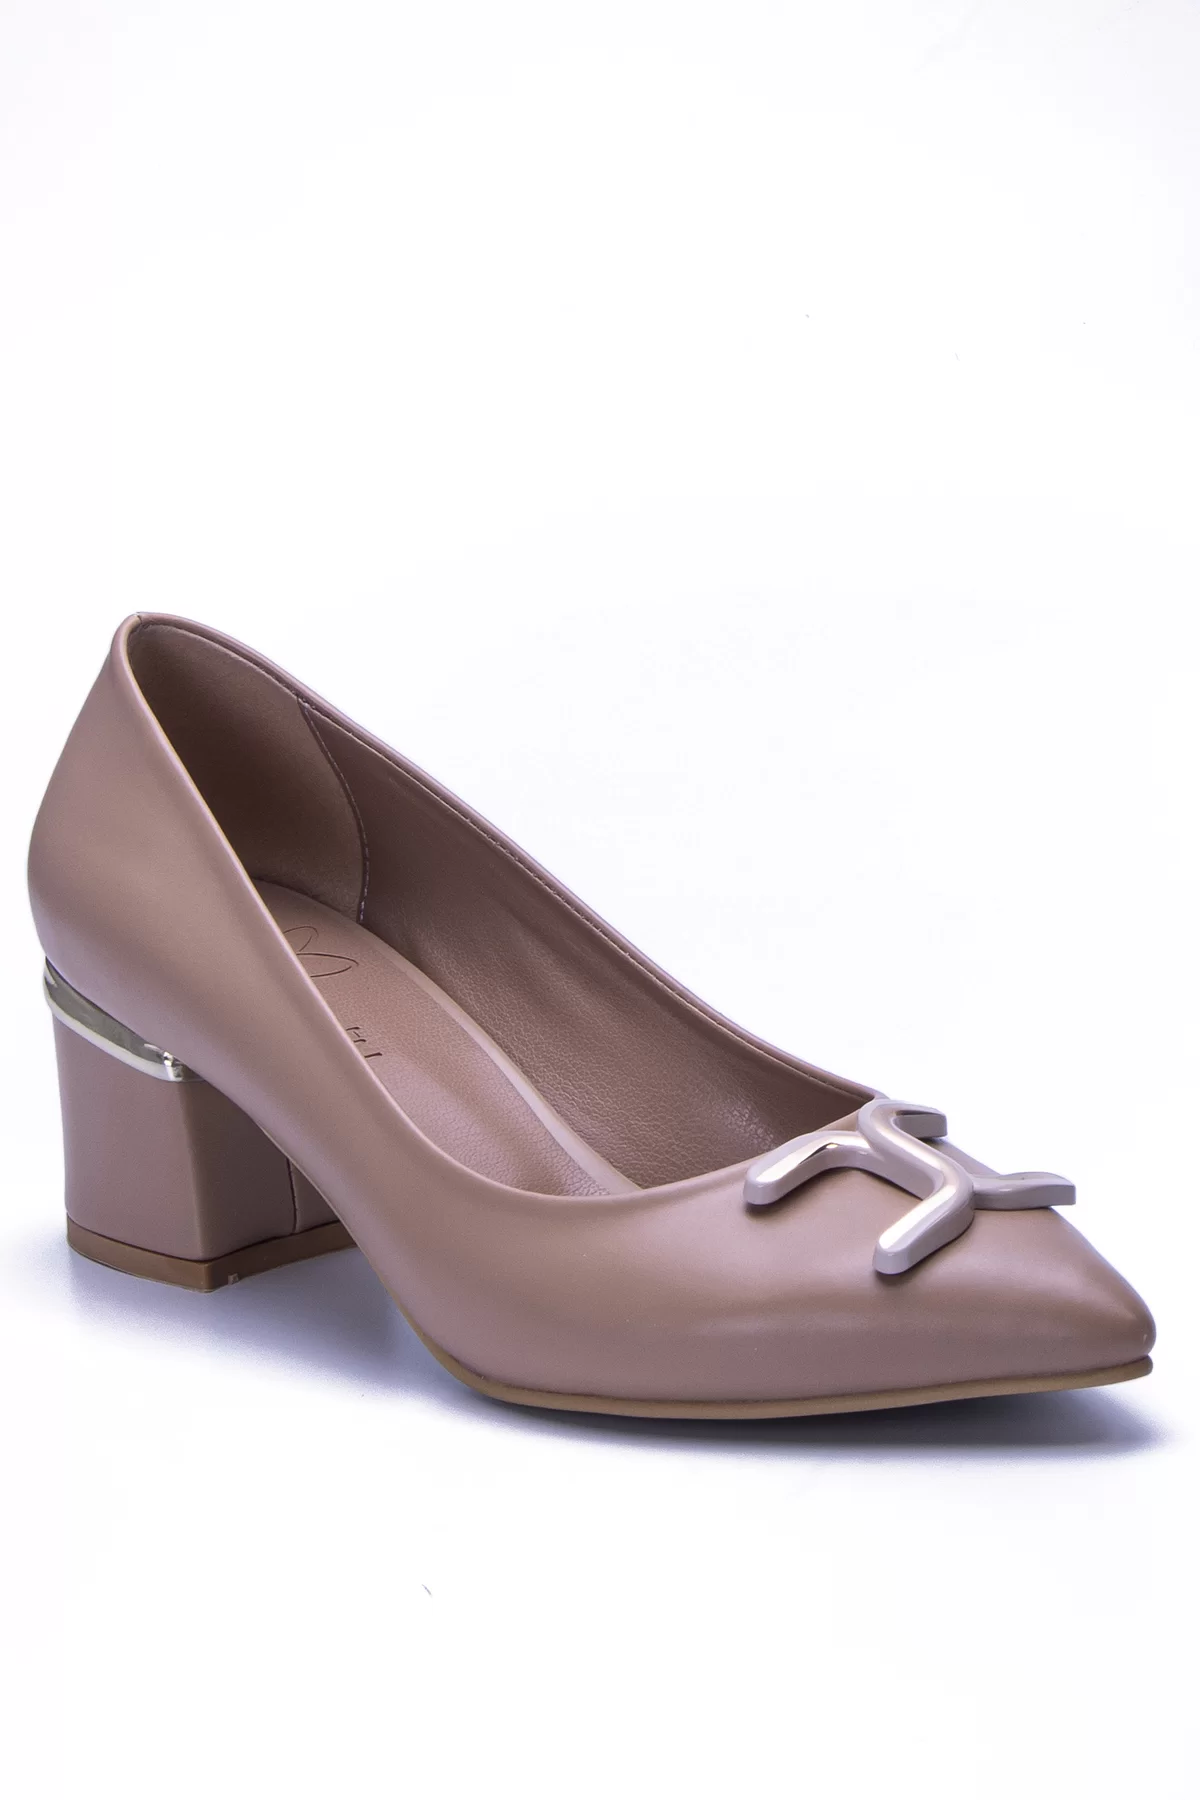 Kadın Klasik Topuklu Ayakkabı BK129 - Ten